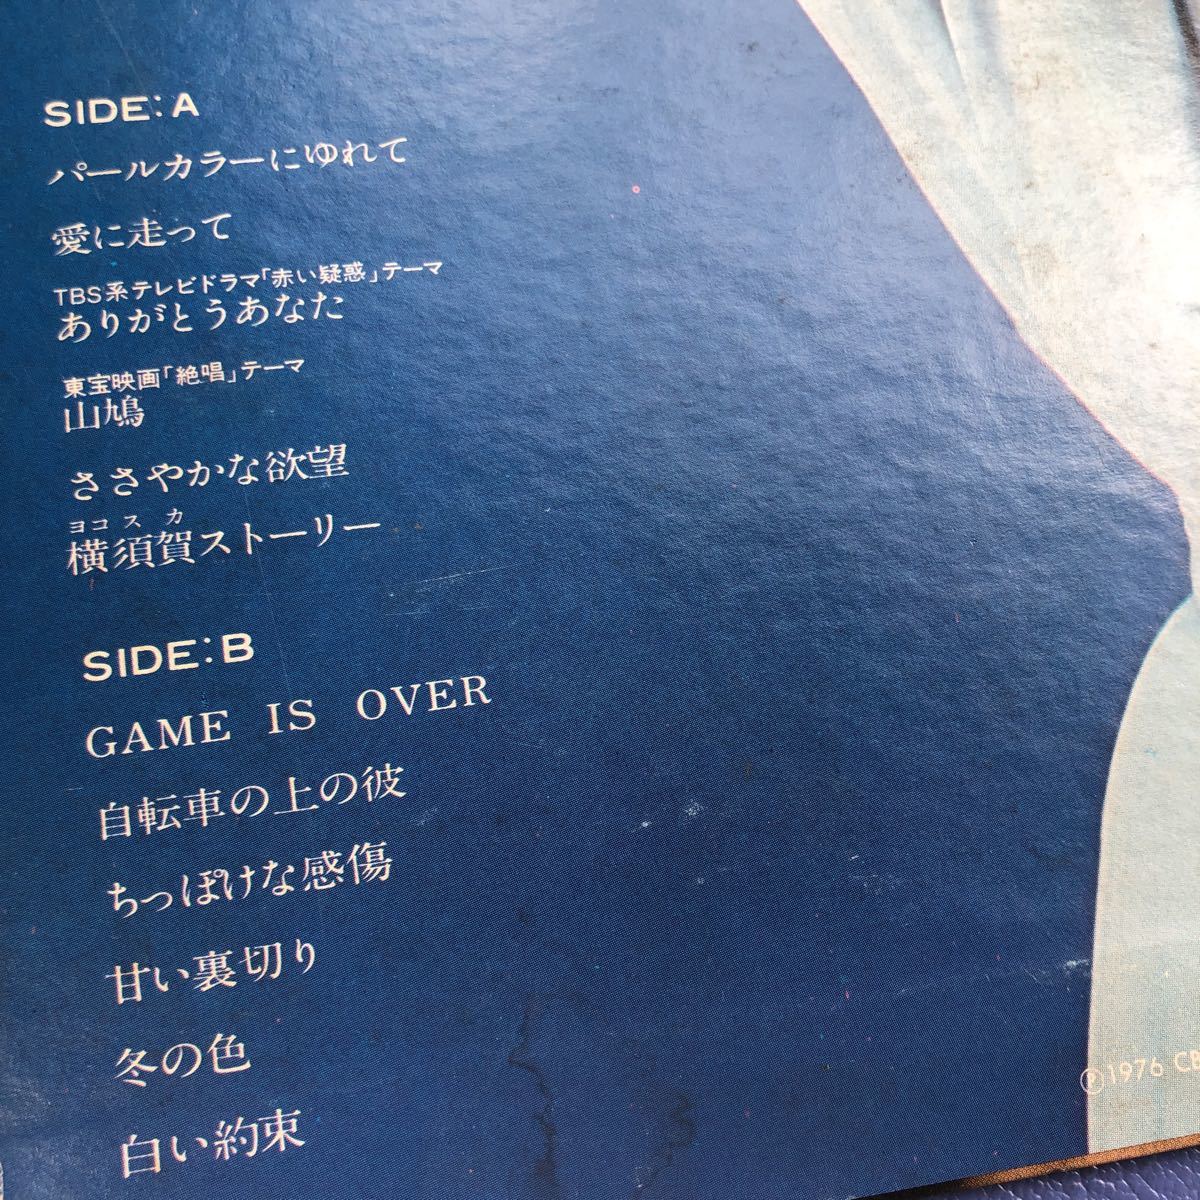 A с лентой LP Yamaguchi Momoe хит все сборник Yokosuka -тактный - Lee белый договоренность запись 5 пункт и больше покупка . стоимость доставки 